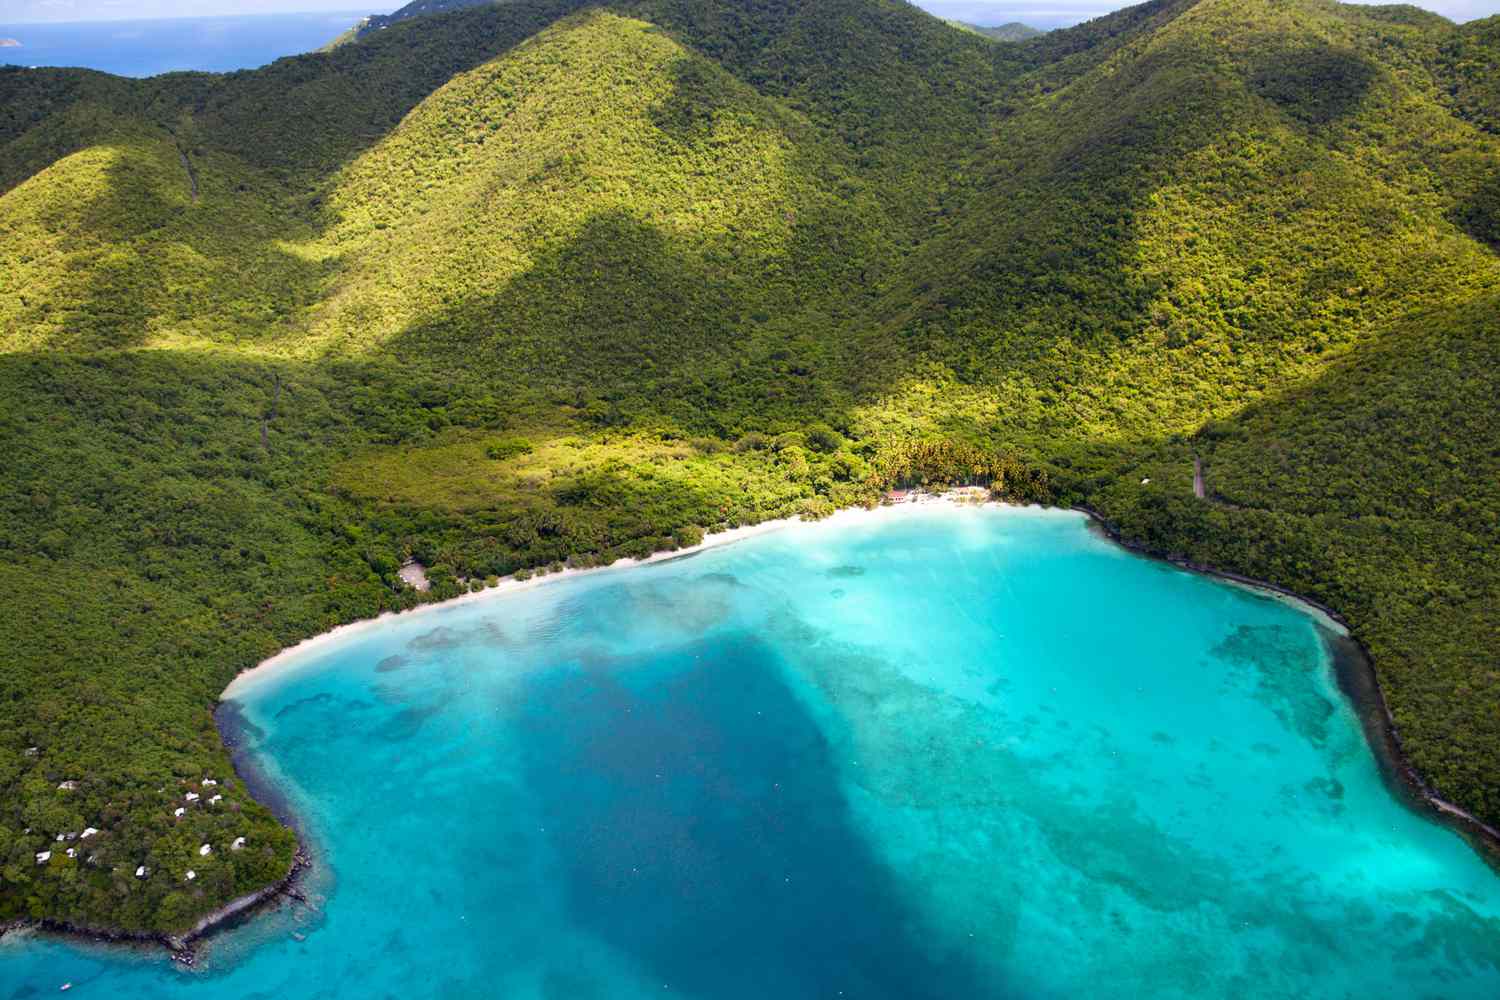 Hòn đảo ở 'cuối thế giới' được rao bán 35 triệu USD